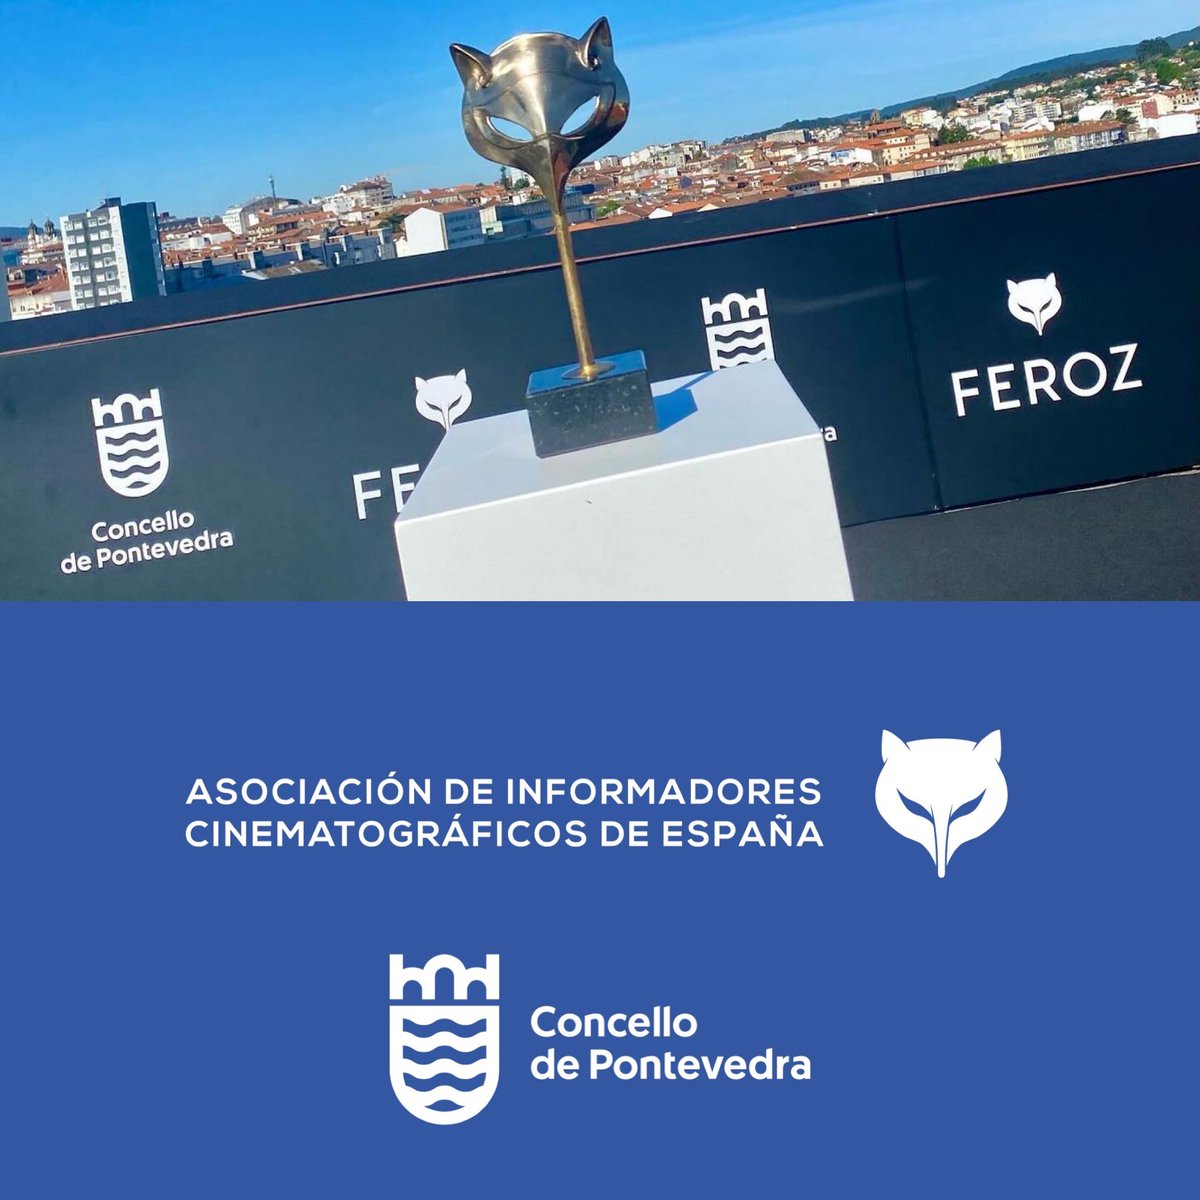 ¡Pues ya es oficial!
Mi ciudad, PONTEVEDRA, será la sede de los @PremiosFeroz durante los dos próximos años, con actividades culturales previas 🎊

La cita será el 25 de enero